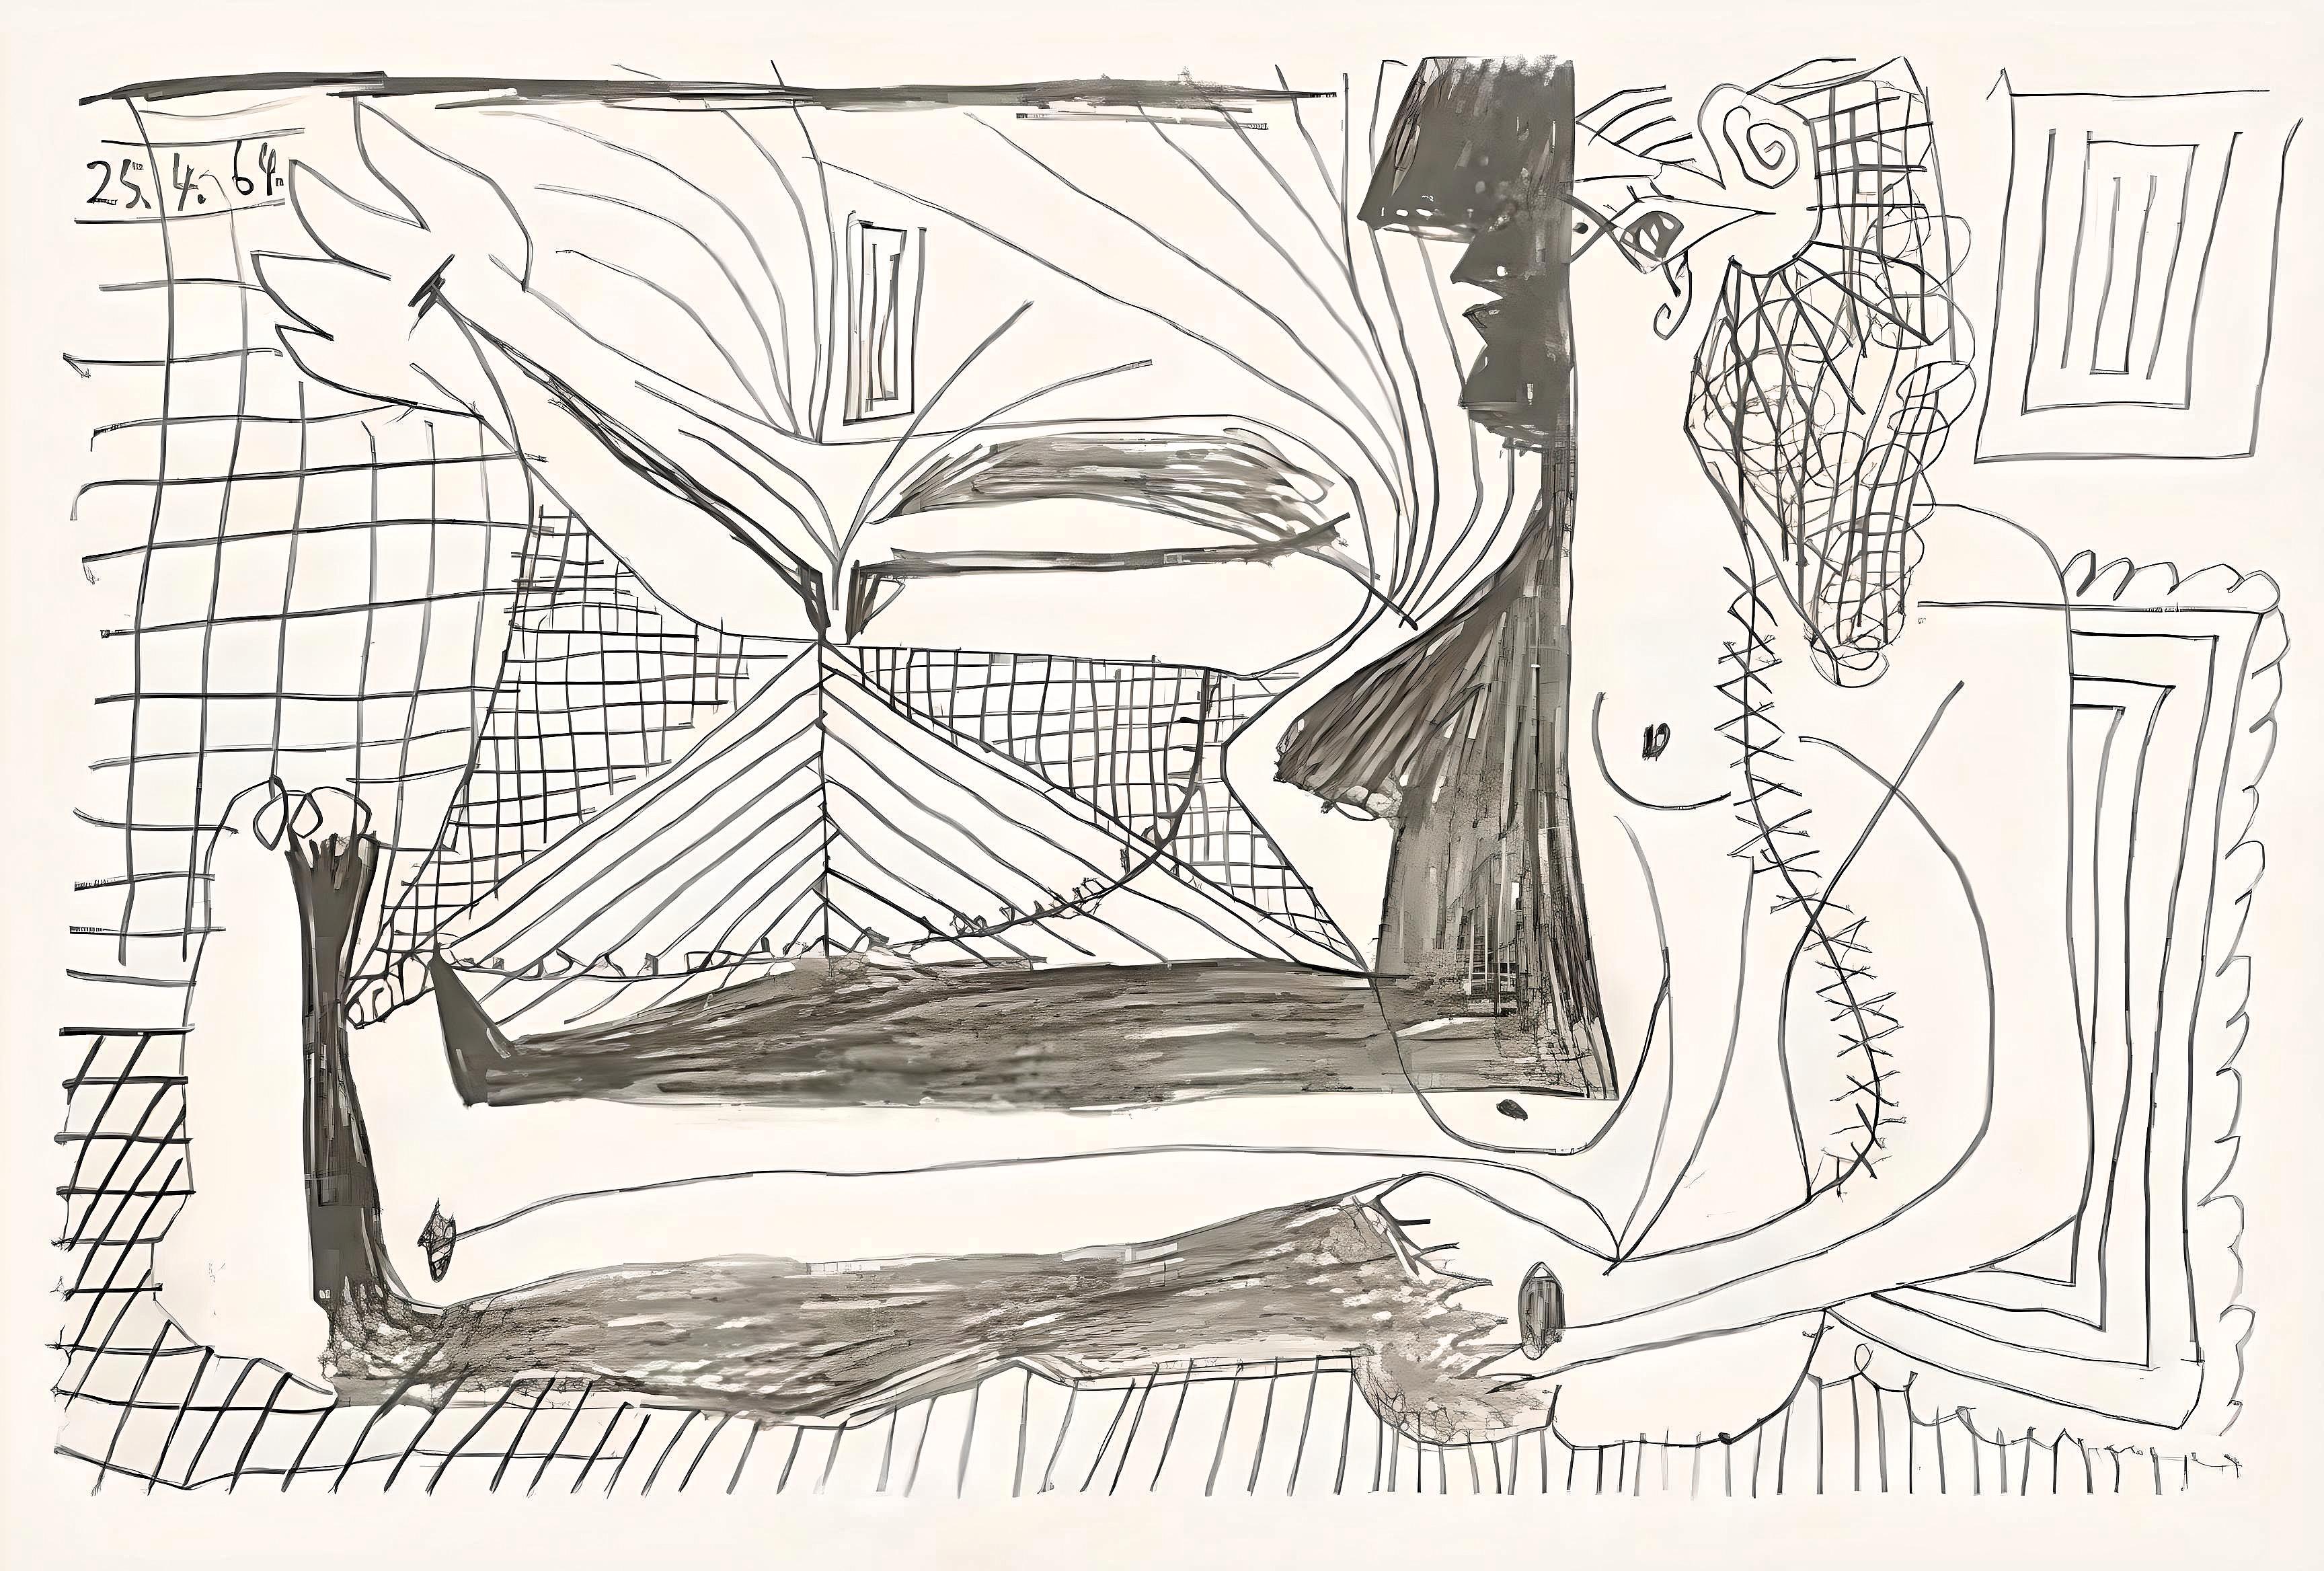 Picasso, Le Goût du Bonheur 2 (Cramer 148; Bloch 2013) (nach)